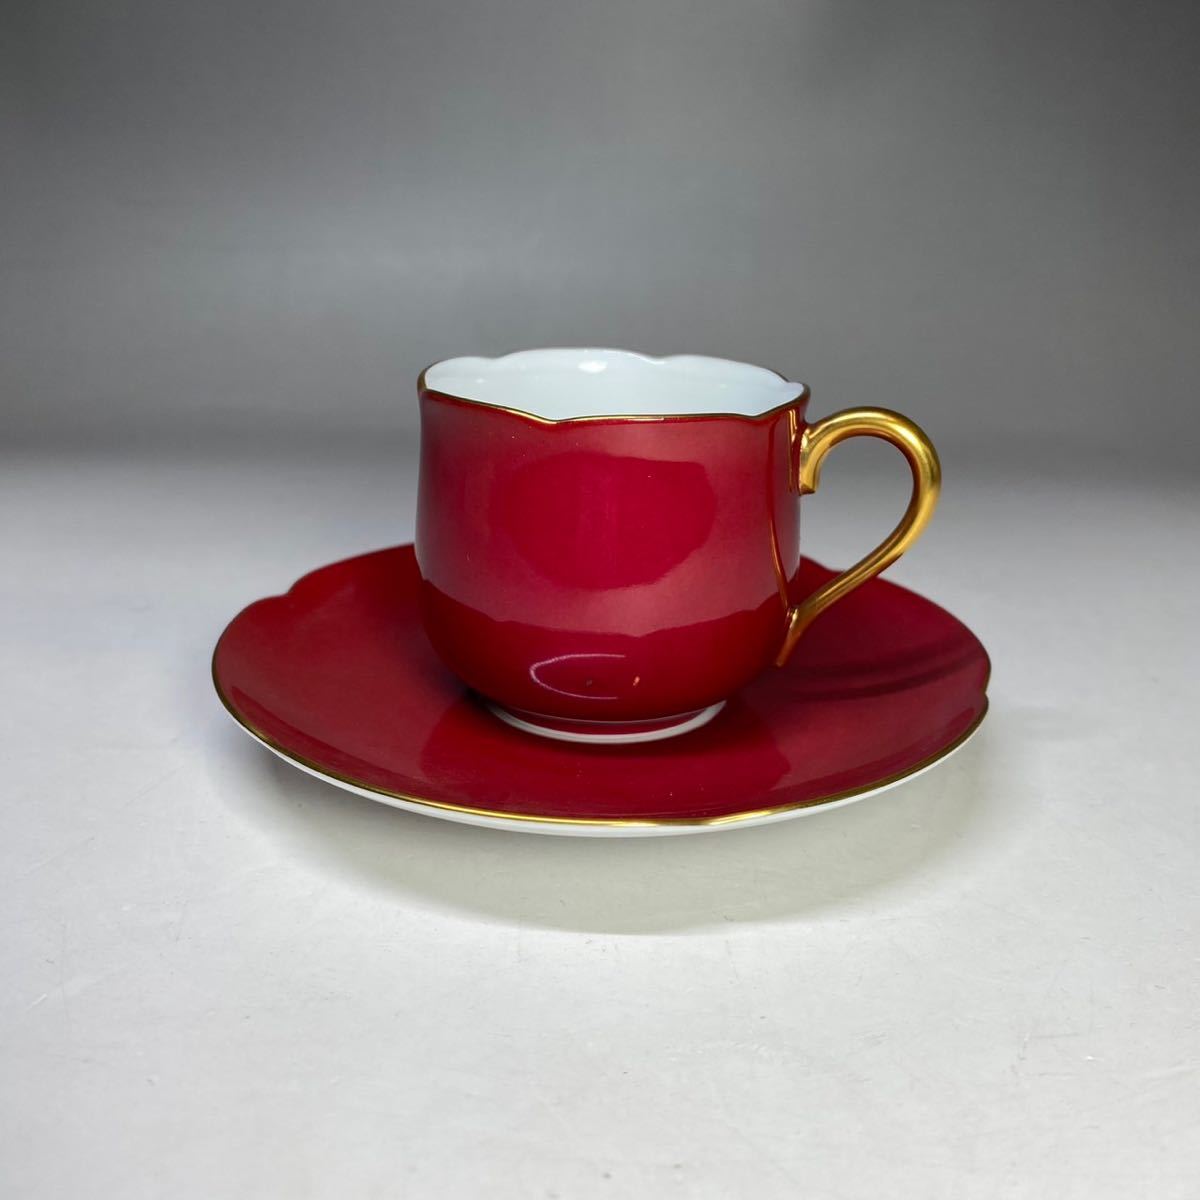 大倉陶園 OKURA チューリップ型 デミタスカップ ソーサー レッド 赤色 洋食器 金彩 陶磁器 古陶磁器 日本製 国産 コーヒーカップ